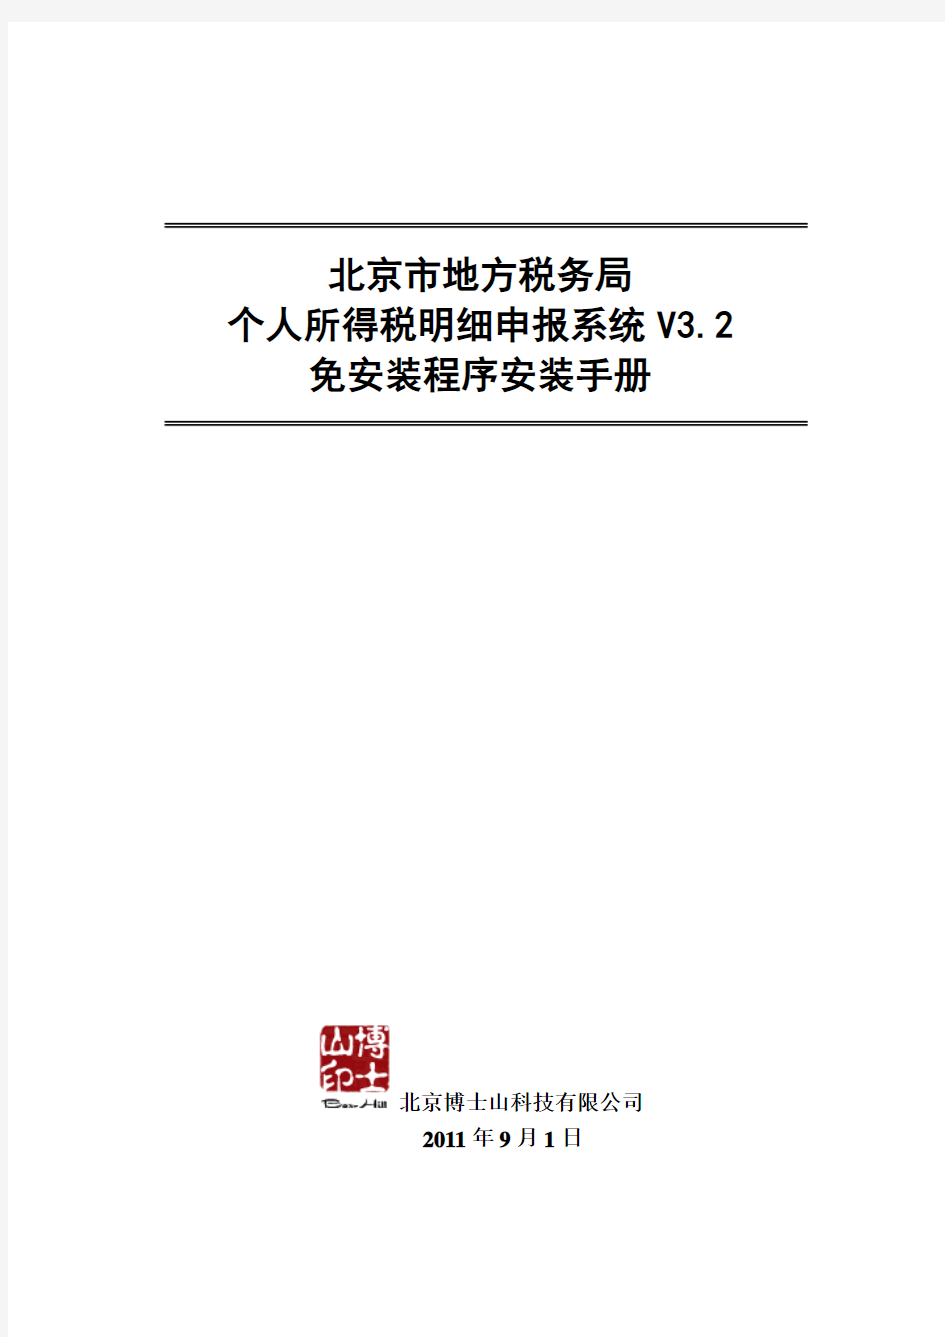 北京市地方税务局个人所得税明细申报系统V30